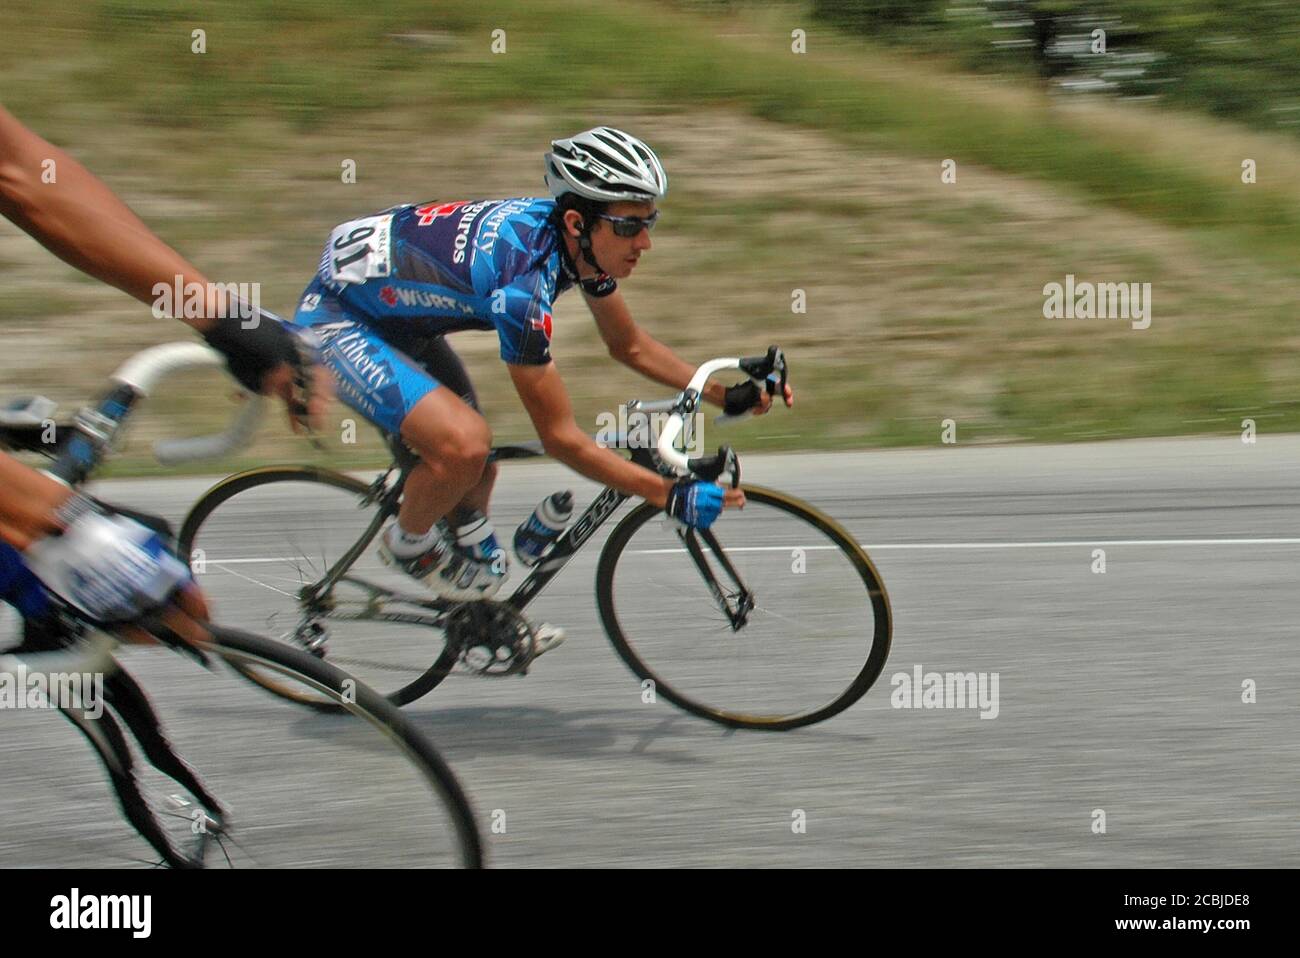 Roberto Heras, der spanische Rennradprofi, der 2005 an der Tour de France - Etappe 11: Courchevel - Briançon teilnimmt. Stockfoto